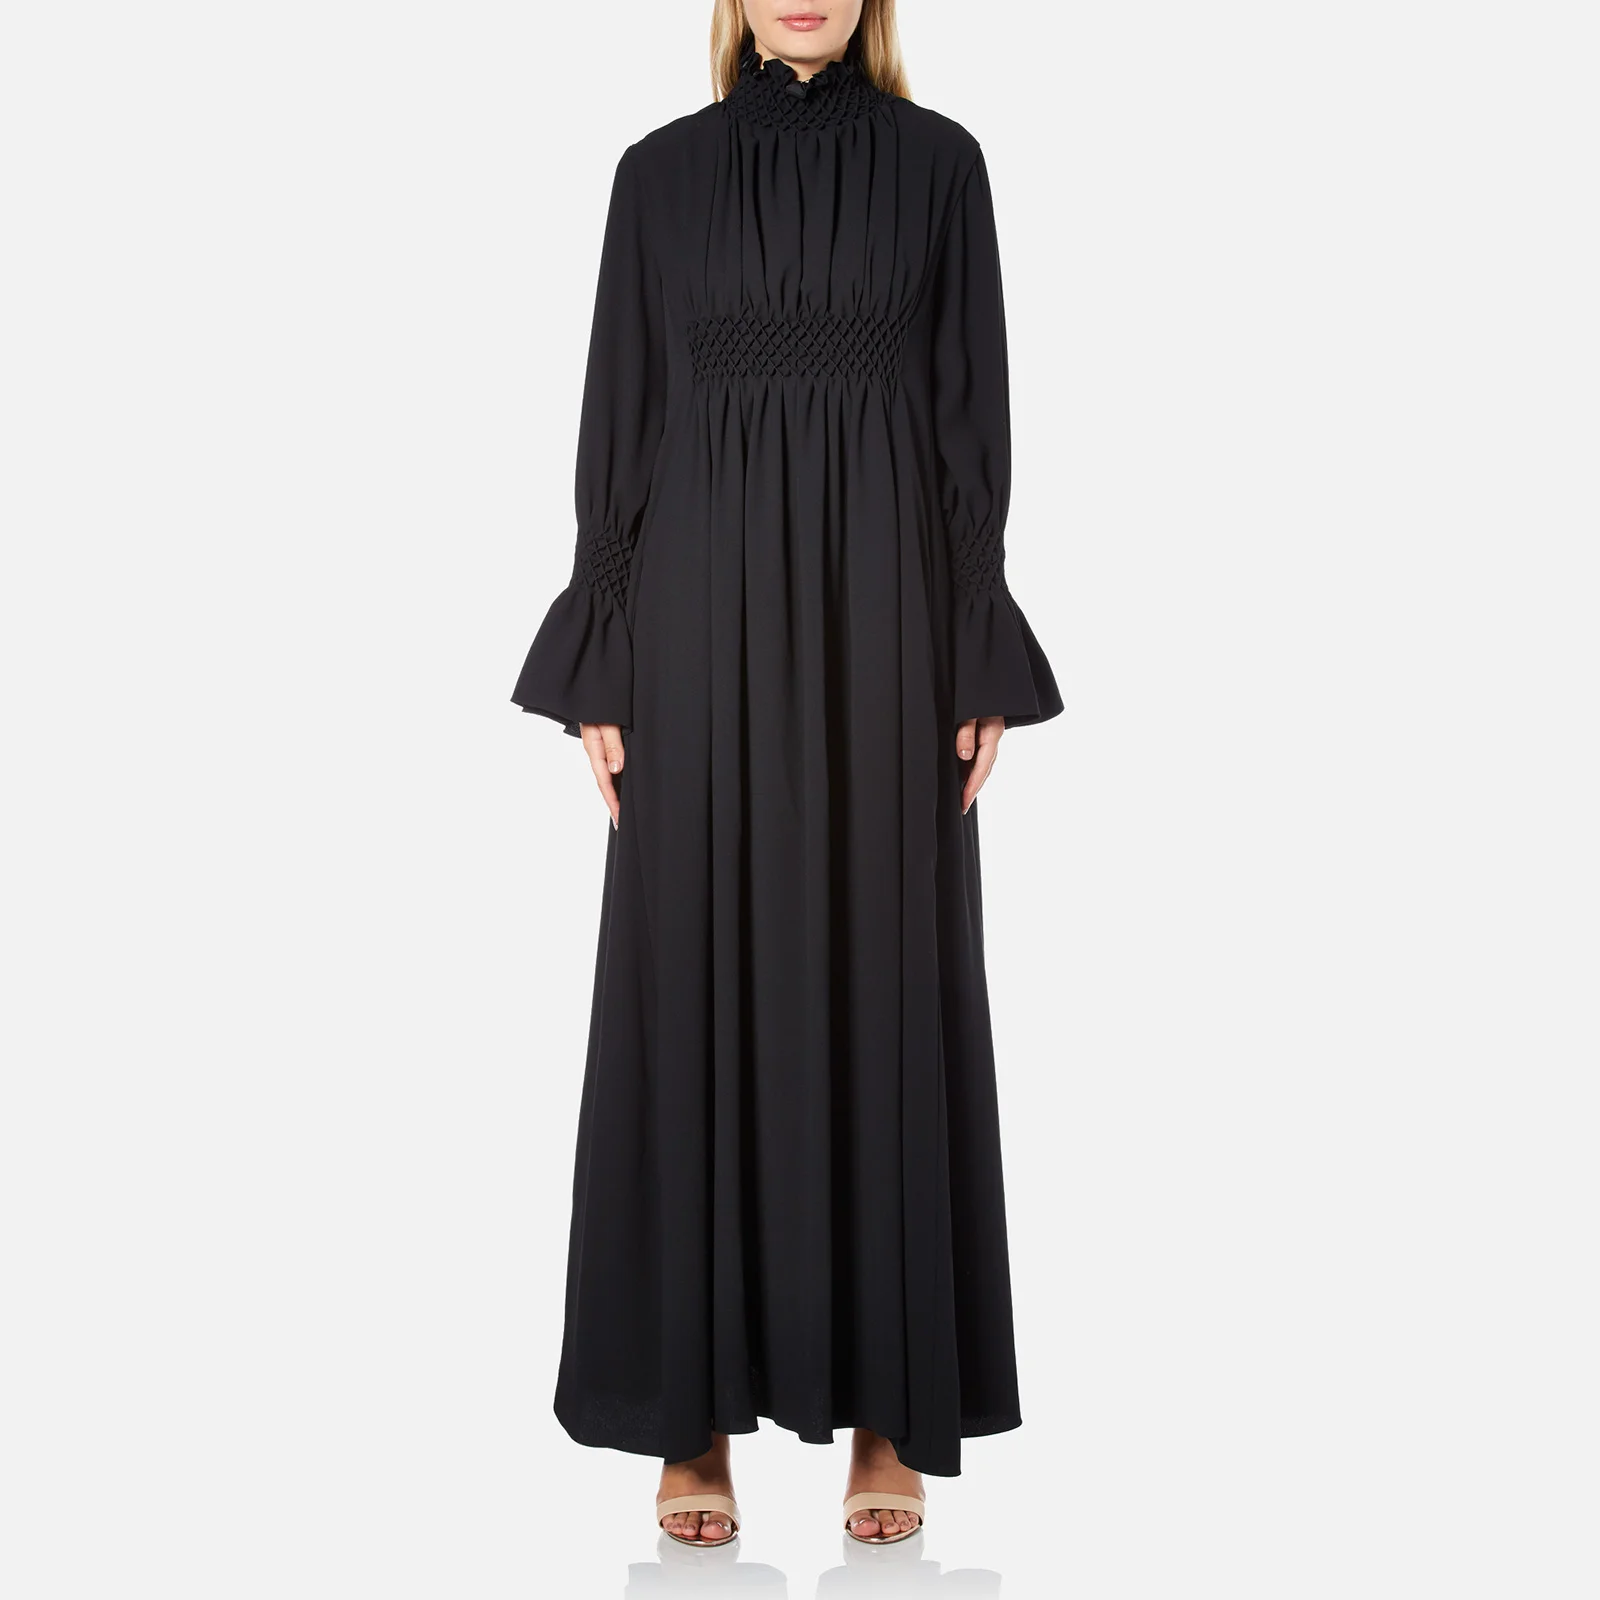 KENZO Women's Crepe Back Satin Maxi Dress - Black Image 1